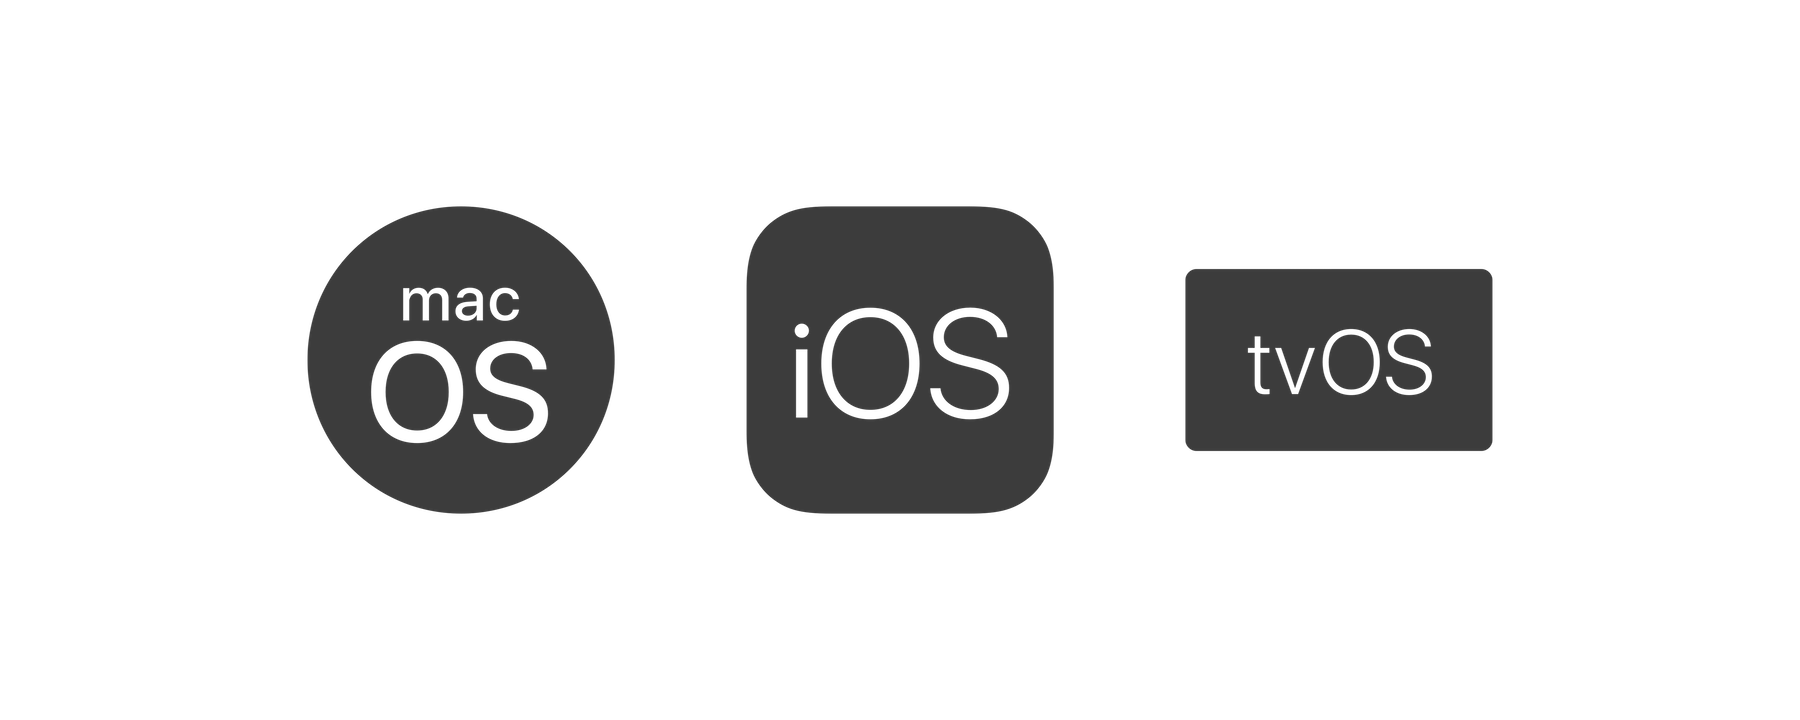 Finalne wersje systemów iOS 12.1.3, macOS 10.14.3 oraz watchOS 5.1.3